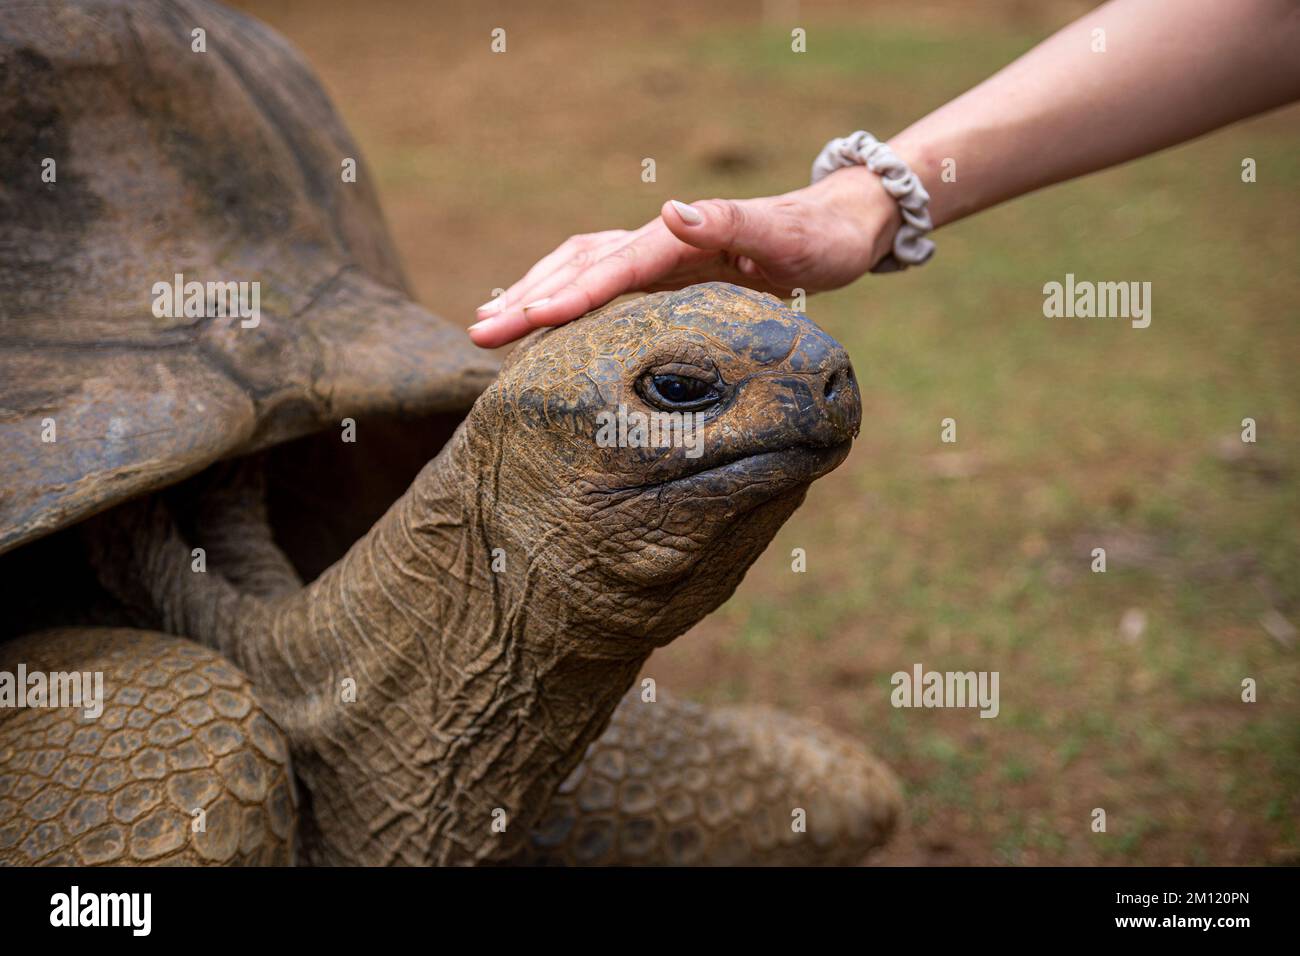 Une jeune femme et une tortue géante dans le Parc naturel de la Vanille, Ile Maurice, Afrique Banque D'Images